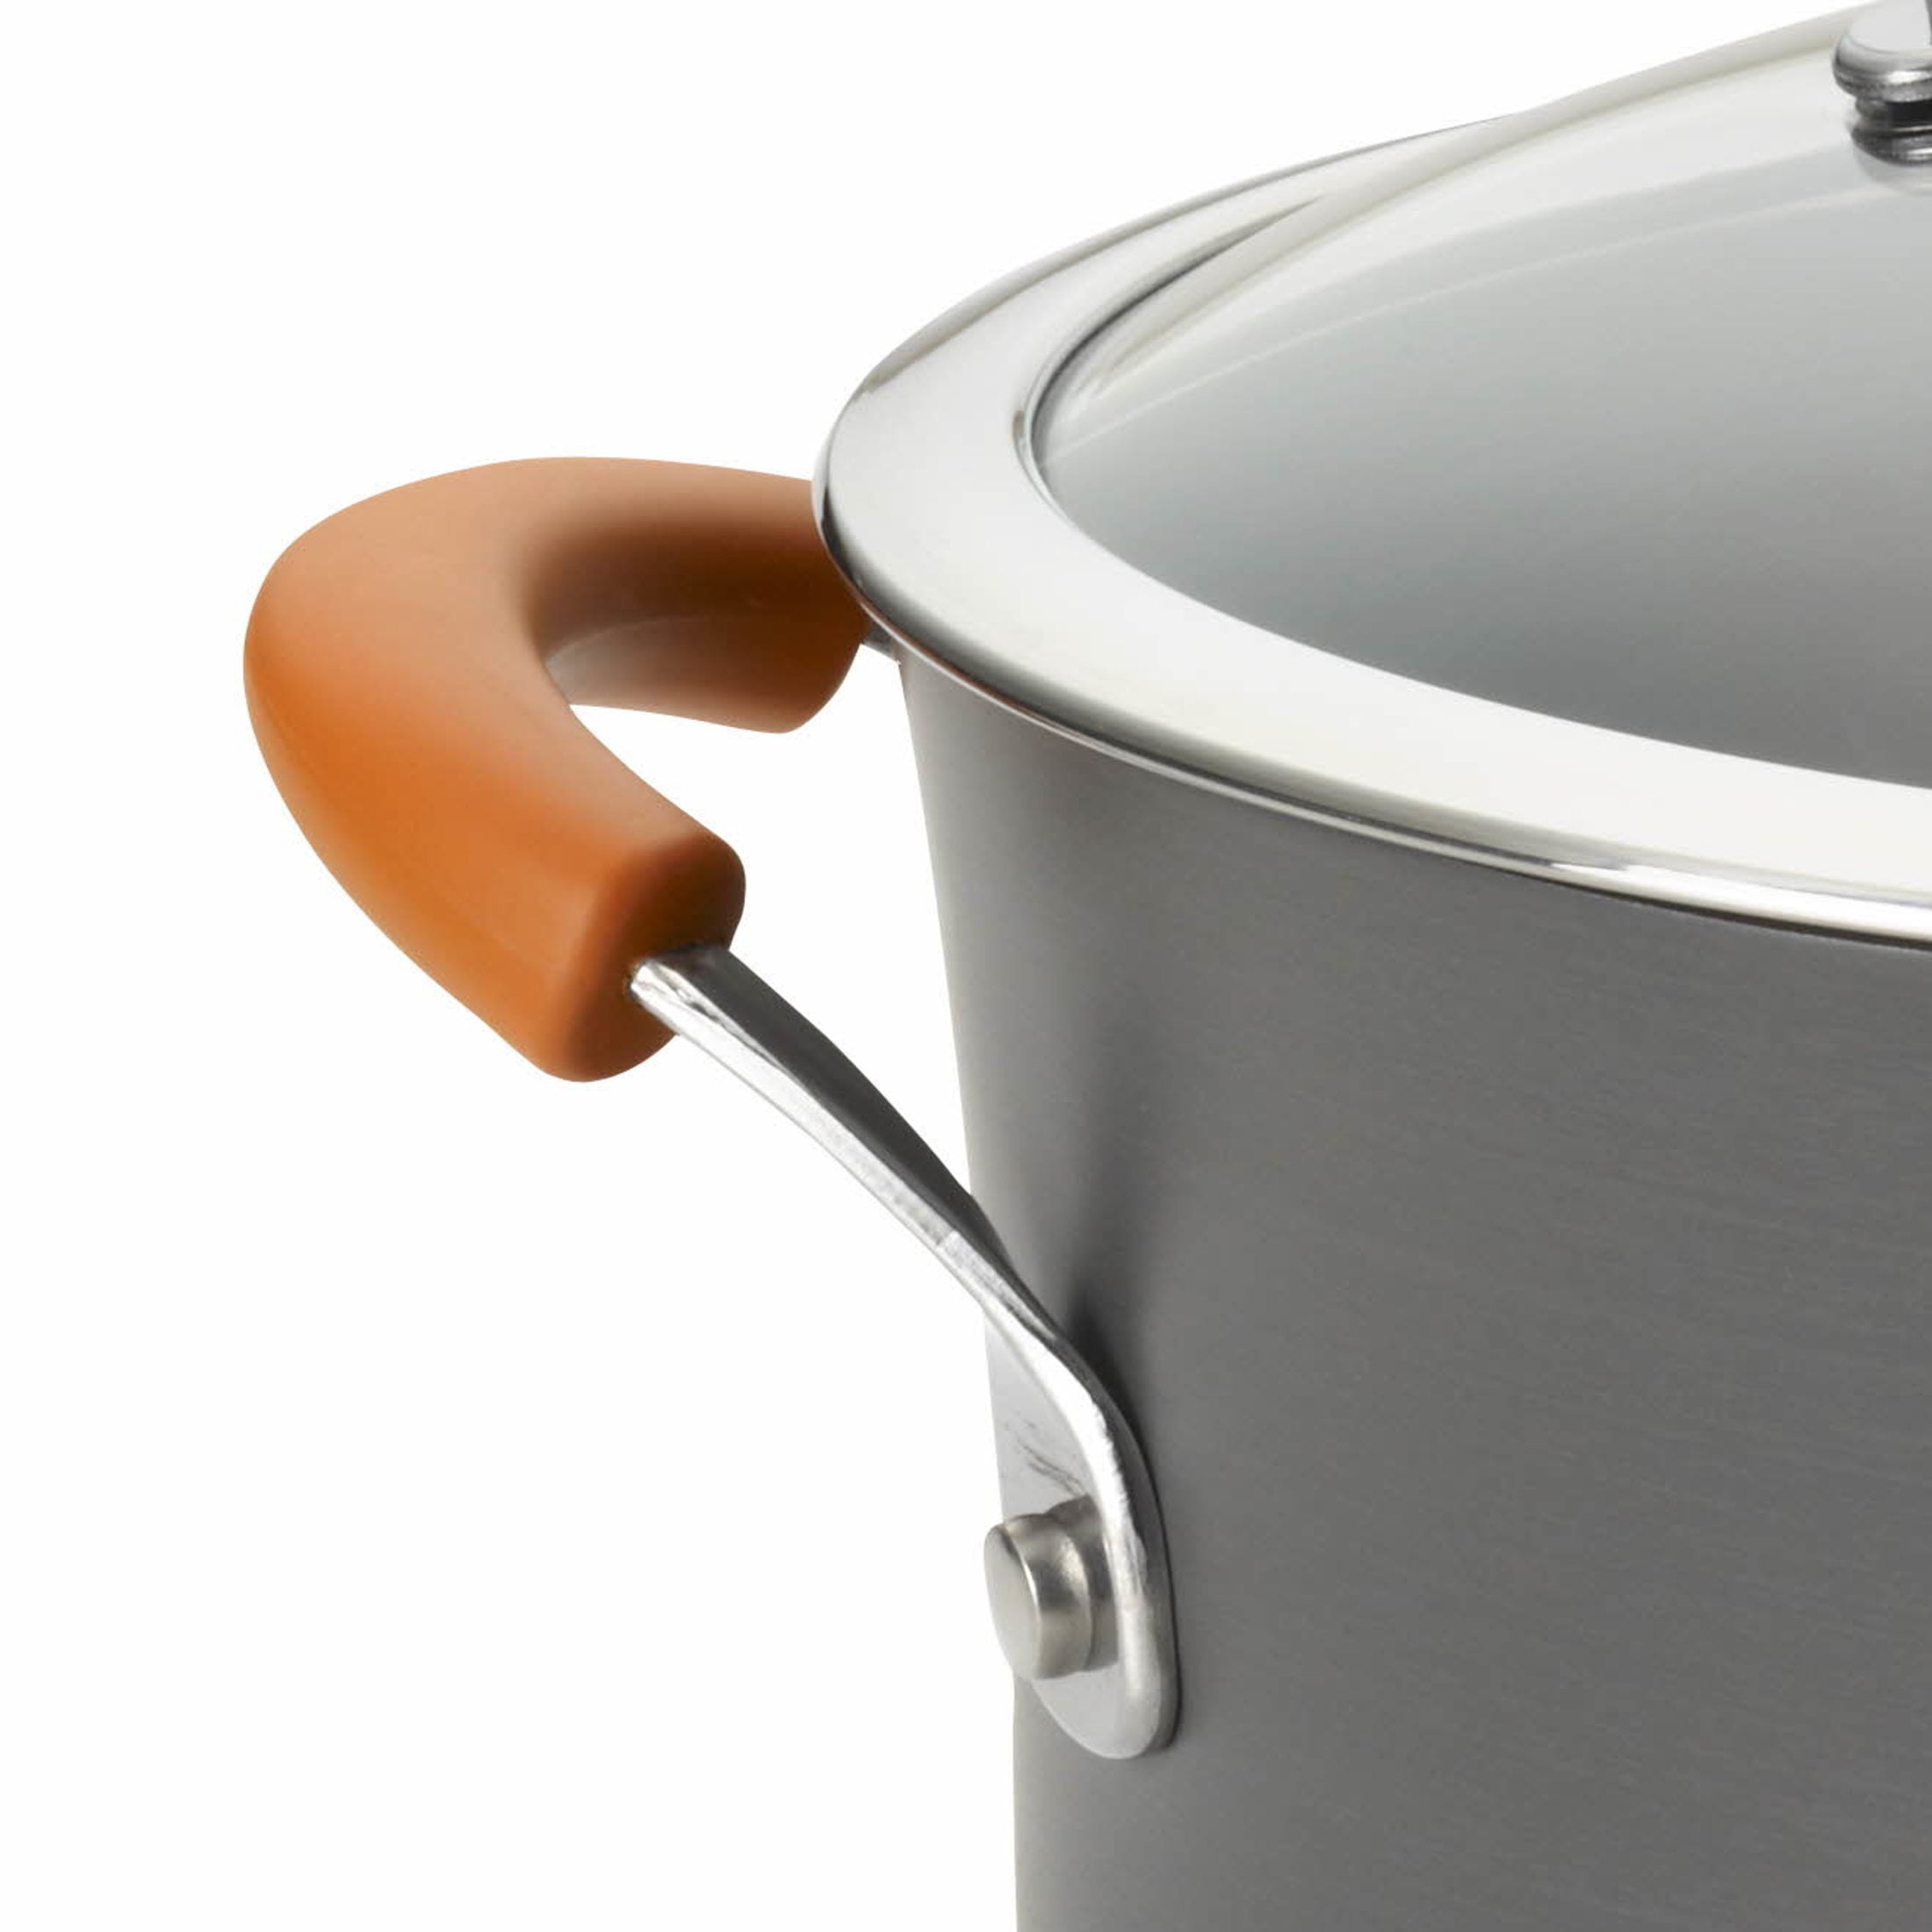 DricRoda Soup Pot 8 Quart Pot Stainless Steel Pasta Pot, Nonstick Stock Pot  Cooking Pot with